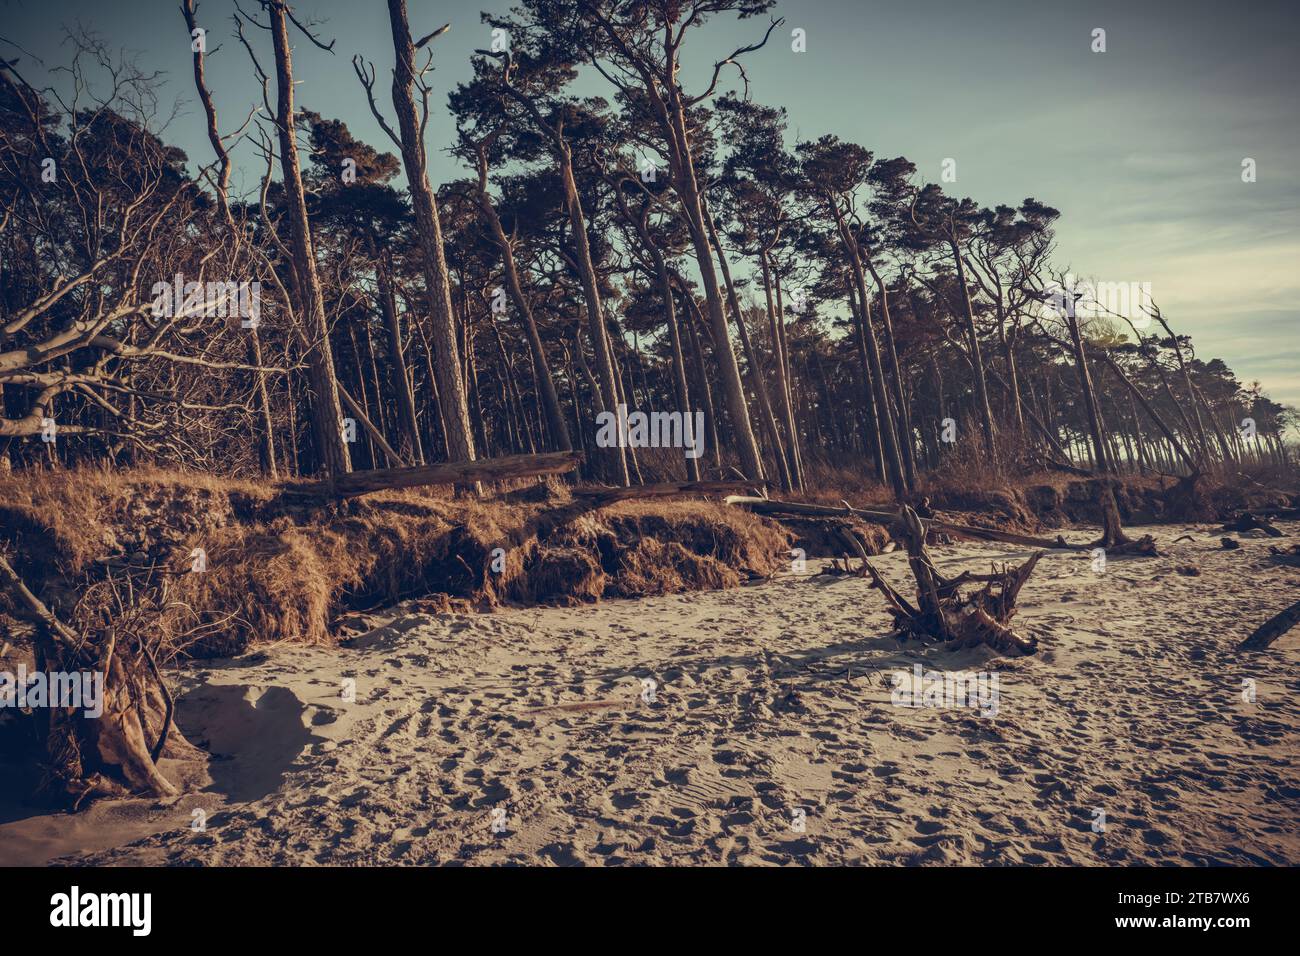 Die knorrigen Kiefern von Weststrand Ahrenshoop in Prerow, die Wächter entlang der Sanddünen stehen, erzählen eine stille Geschichte der wilden Ostseeküste Stockfoto